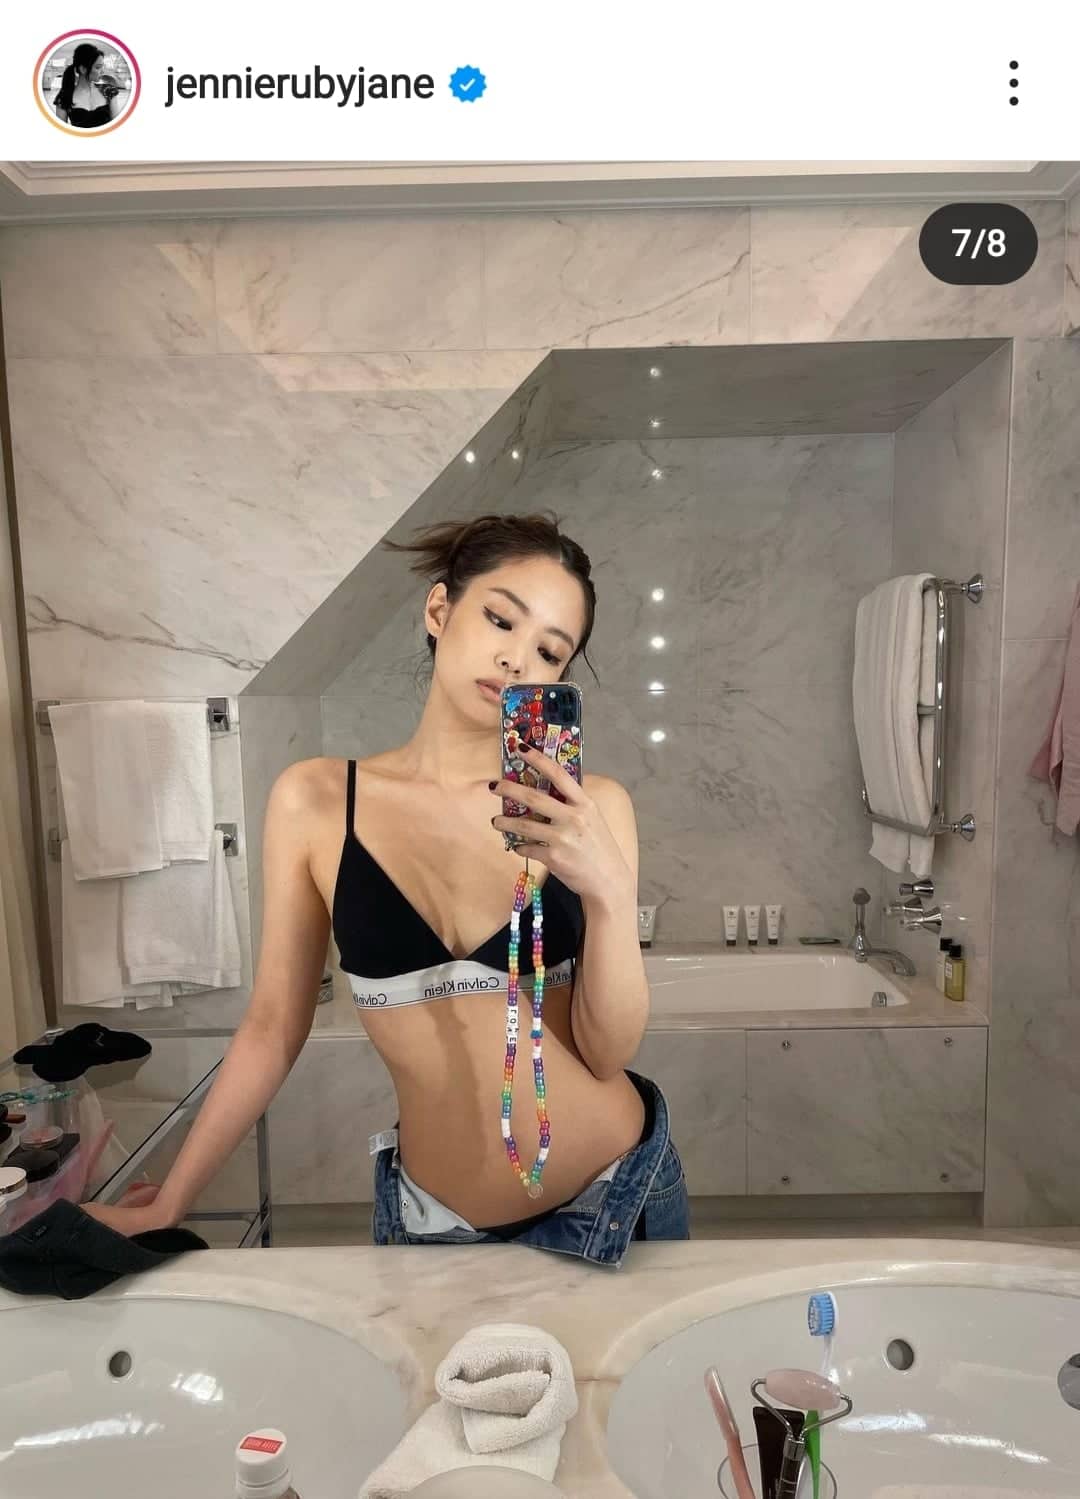 Jennie (BLACKPINK) khiến fan 'bấn loạn' với bức ảnh selfie trong phòng tắm khoe khéo đường cong quyến rũ  - Ảnh 1